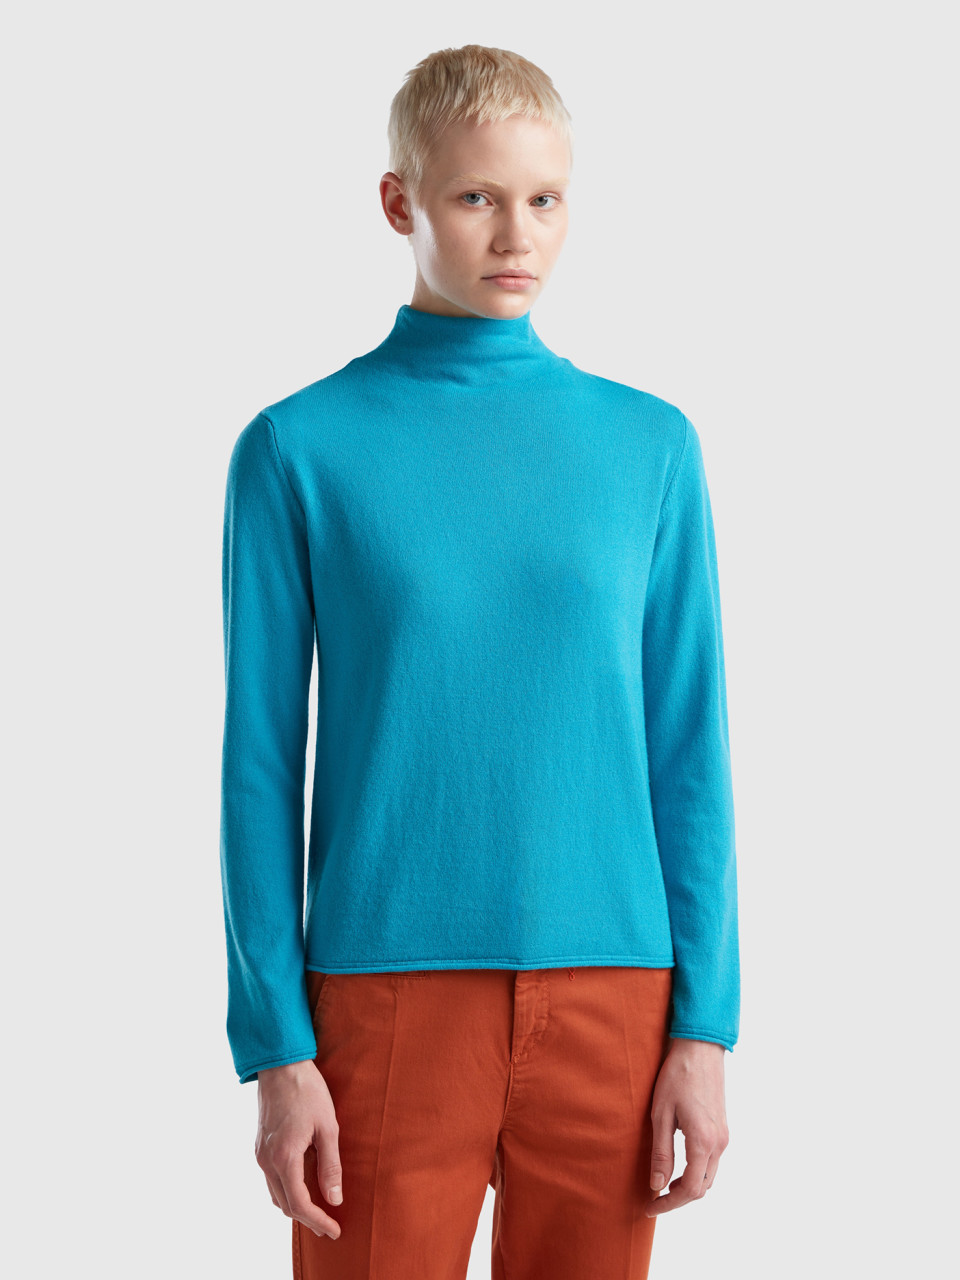 Benetton, Cashmere Blend Sweater, Light Blue, Women